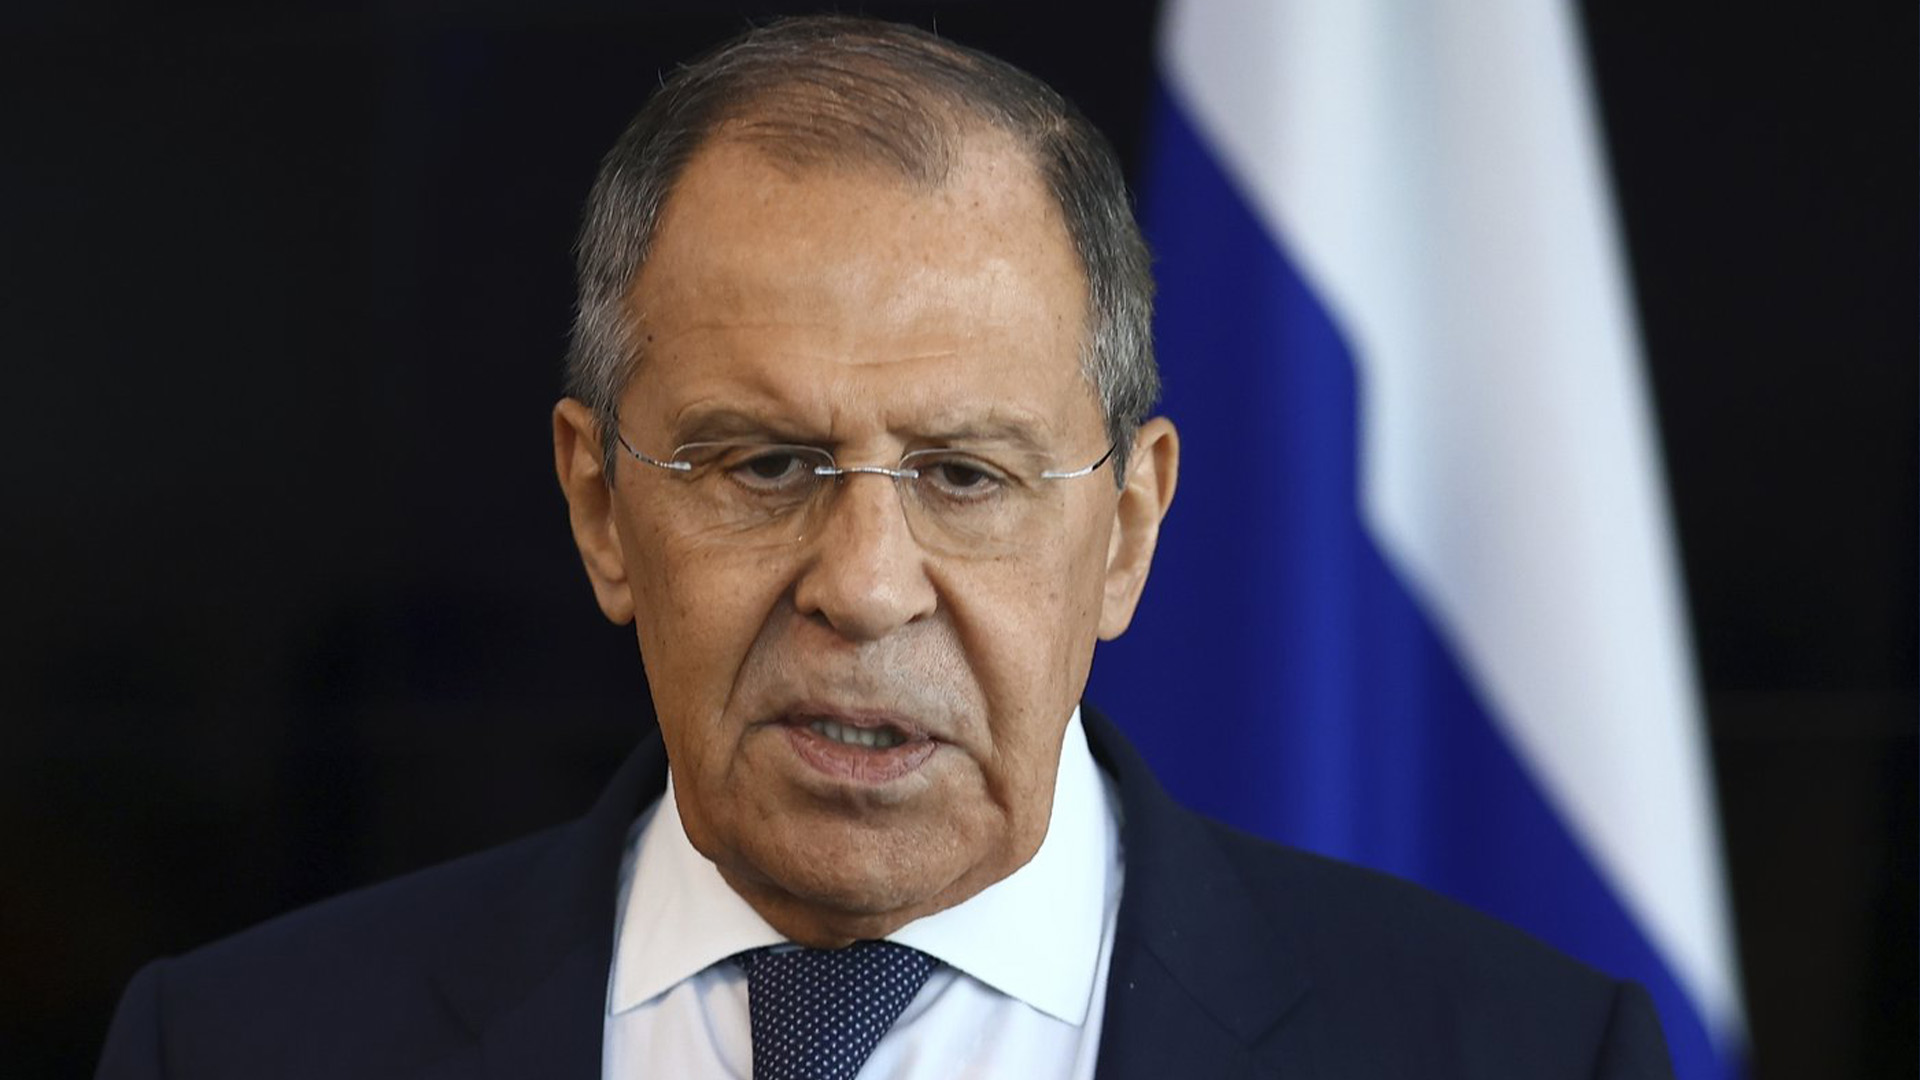 Le ministre russe des Affaires étrangères Sergueï Lavrov s'adresse aux journalistes russes après le sommet de l'ASEAN sur la zone commerciale Australie-Nouvelle-Zélande (AANZTA) à Phnom Penh, au Cambodge, le dimanche 13 novembre 2022.